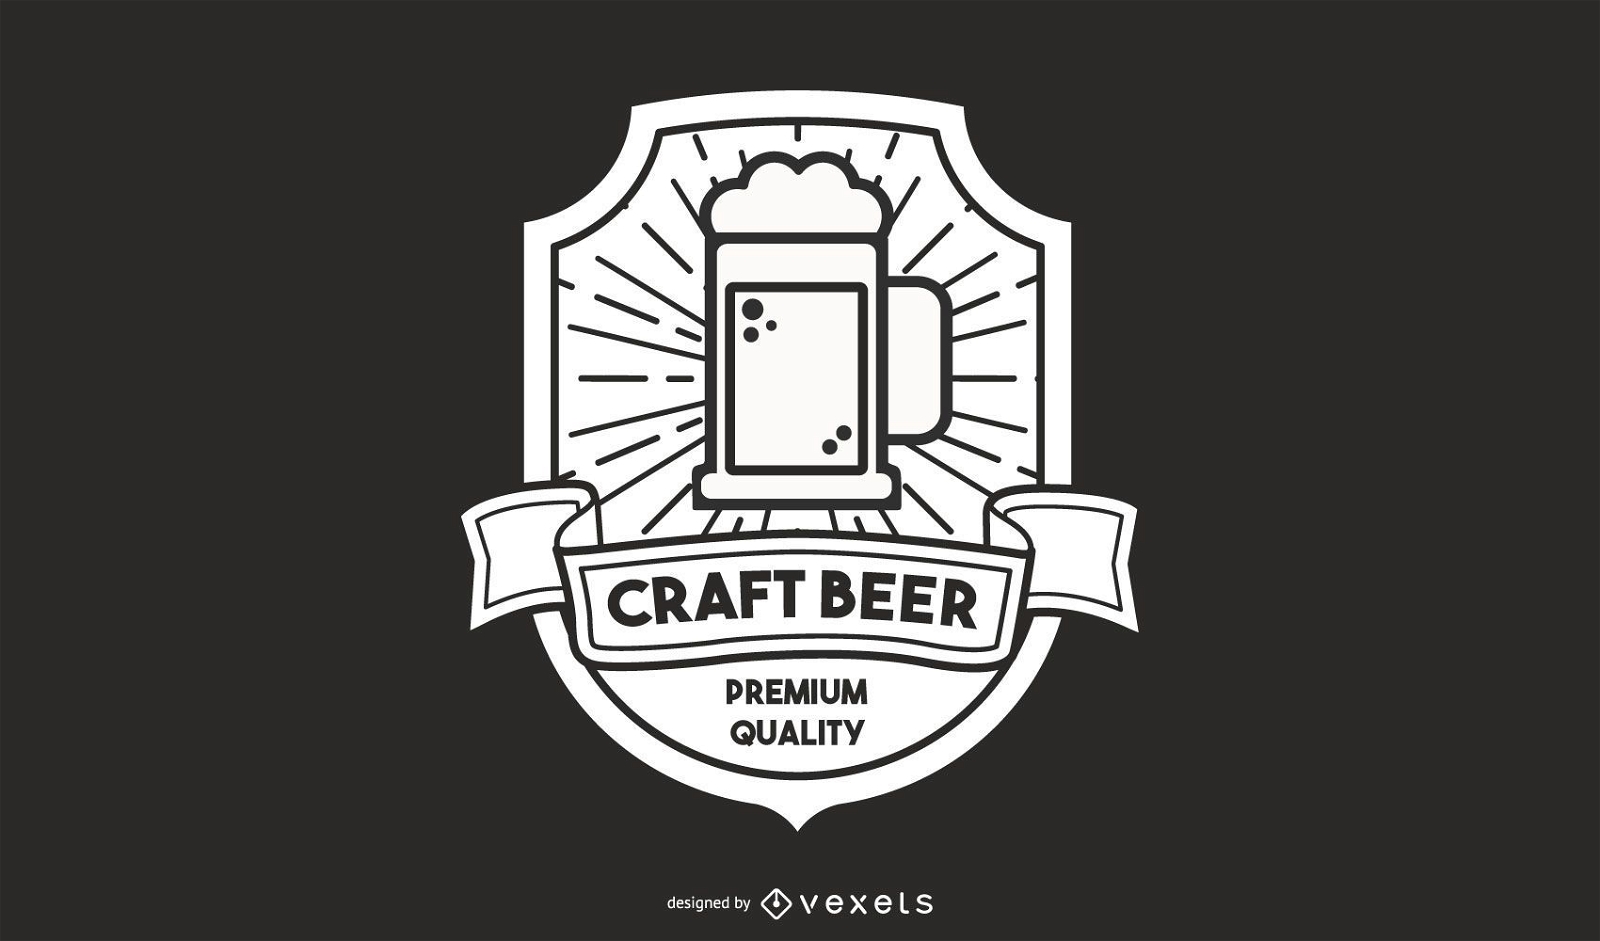 Craft beer logo design